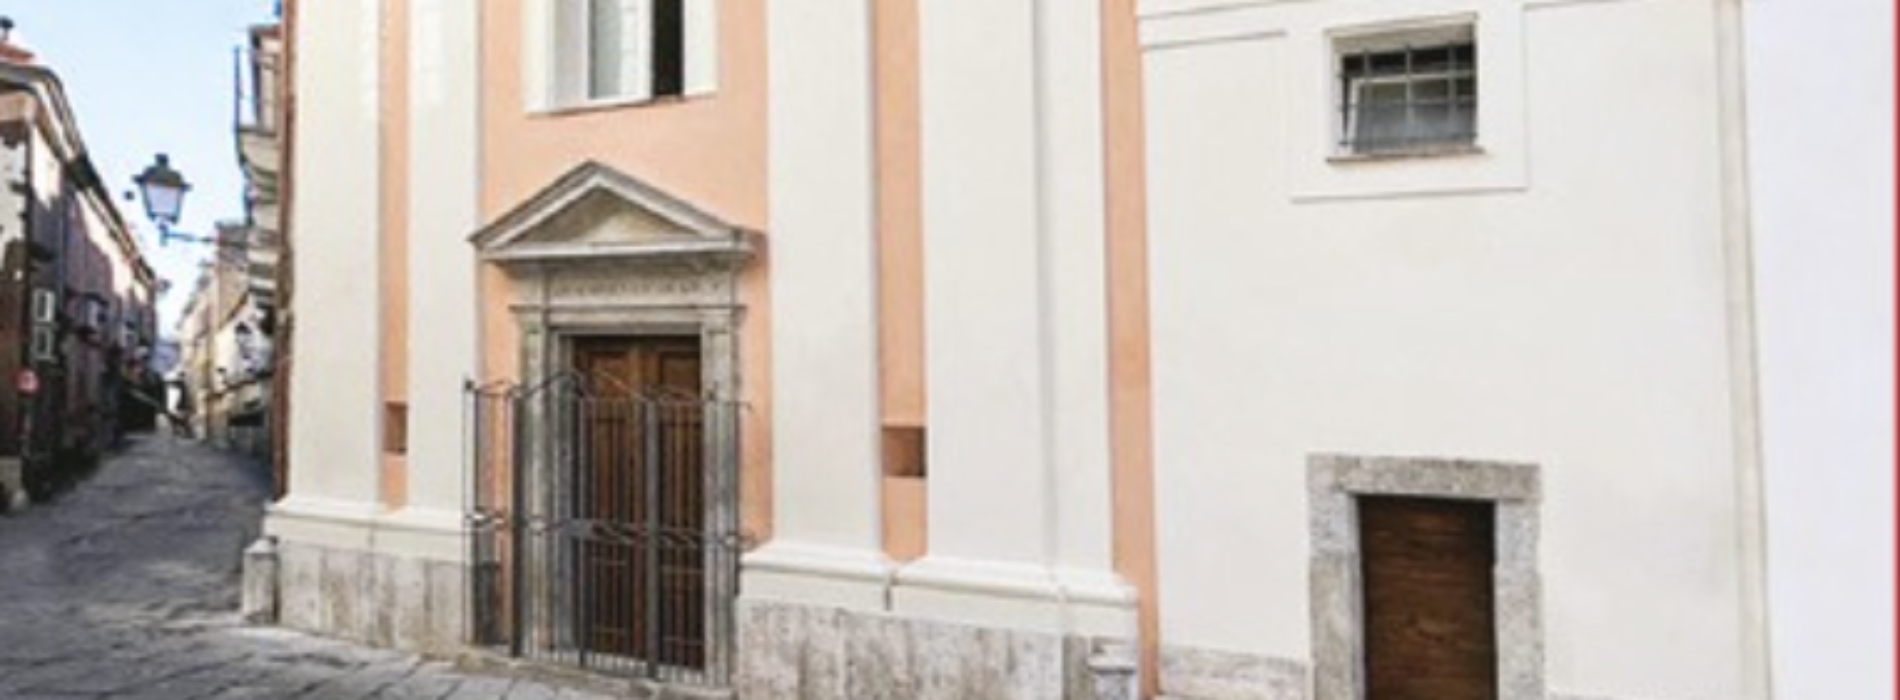 Chiesa di Sant’Elena, dopo il restauro c’è la consacrazione